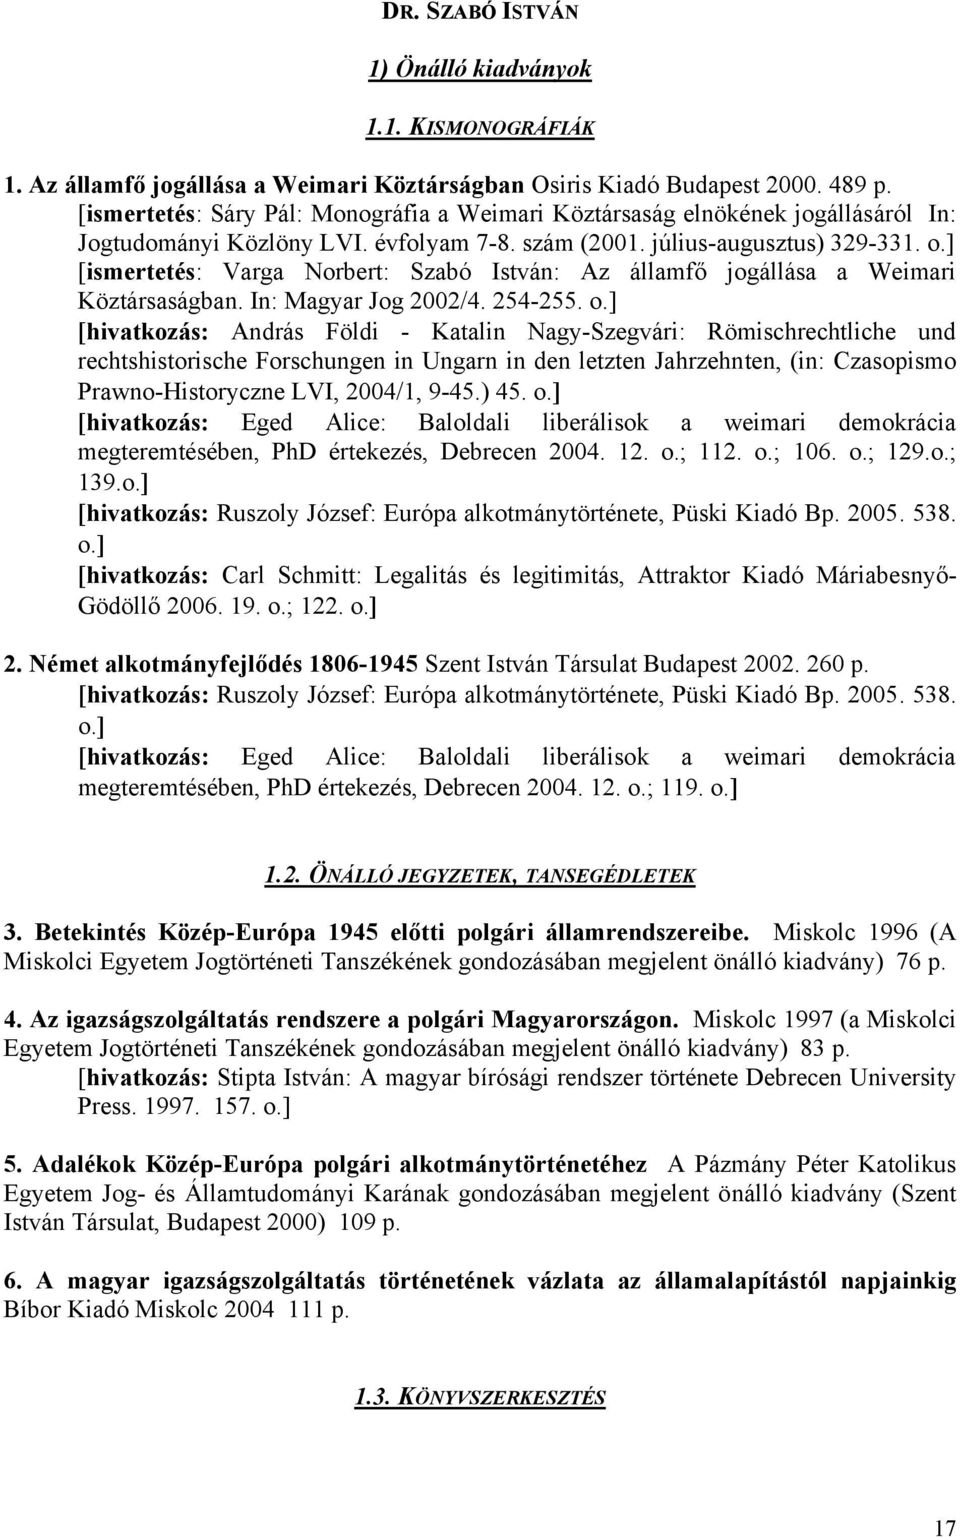 ] [ismertetés: Varga Norbert: Szabó István: Az államfő jogállása a Weimari Köztársaságban. In: Magyar Jog 2002/4. 254-255. o.